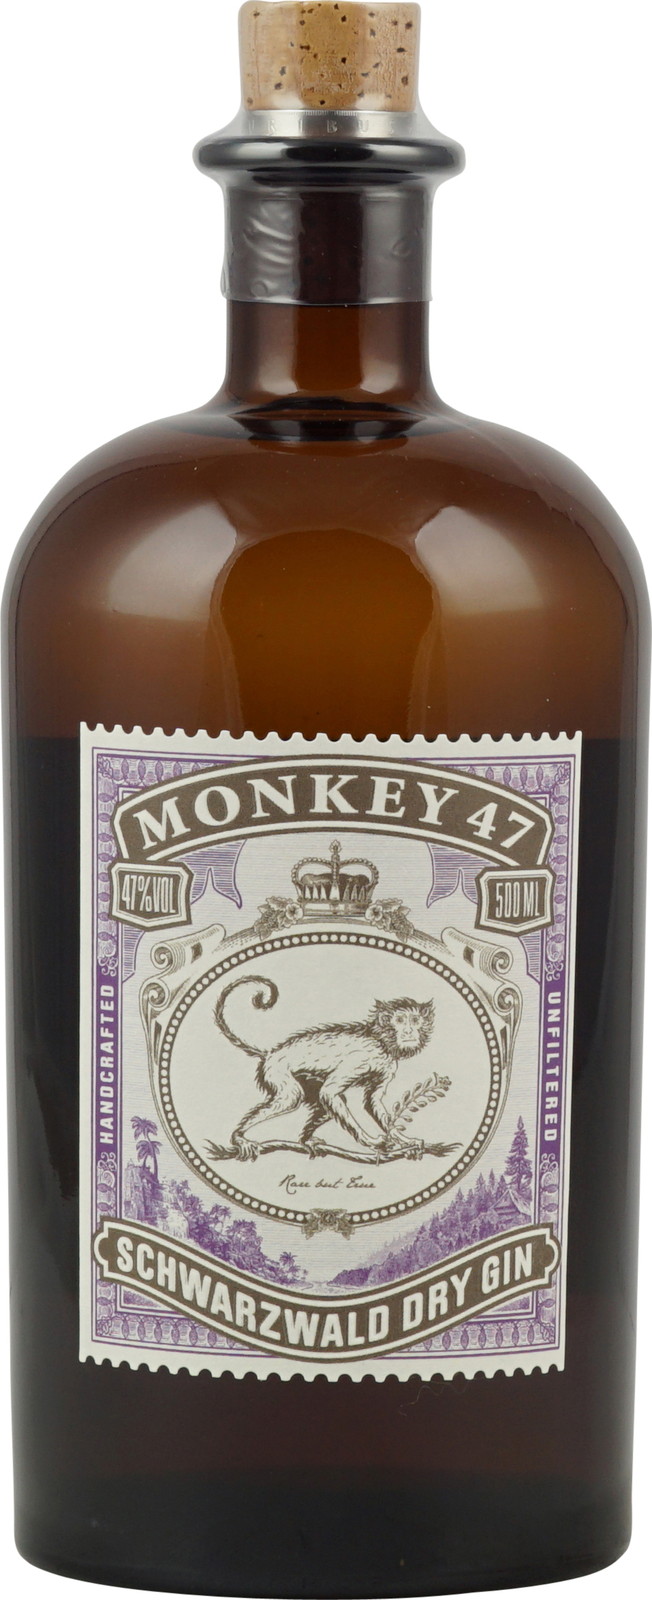 Monkey 47 Schwarzwald Dry Gin 0,5 Liter + Monkey 47 The Becher kaufen.